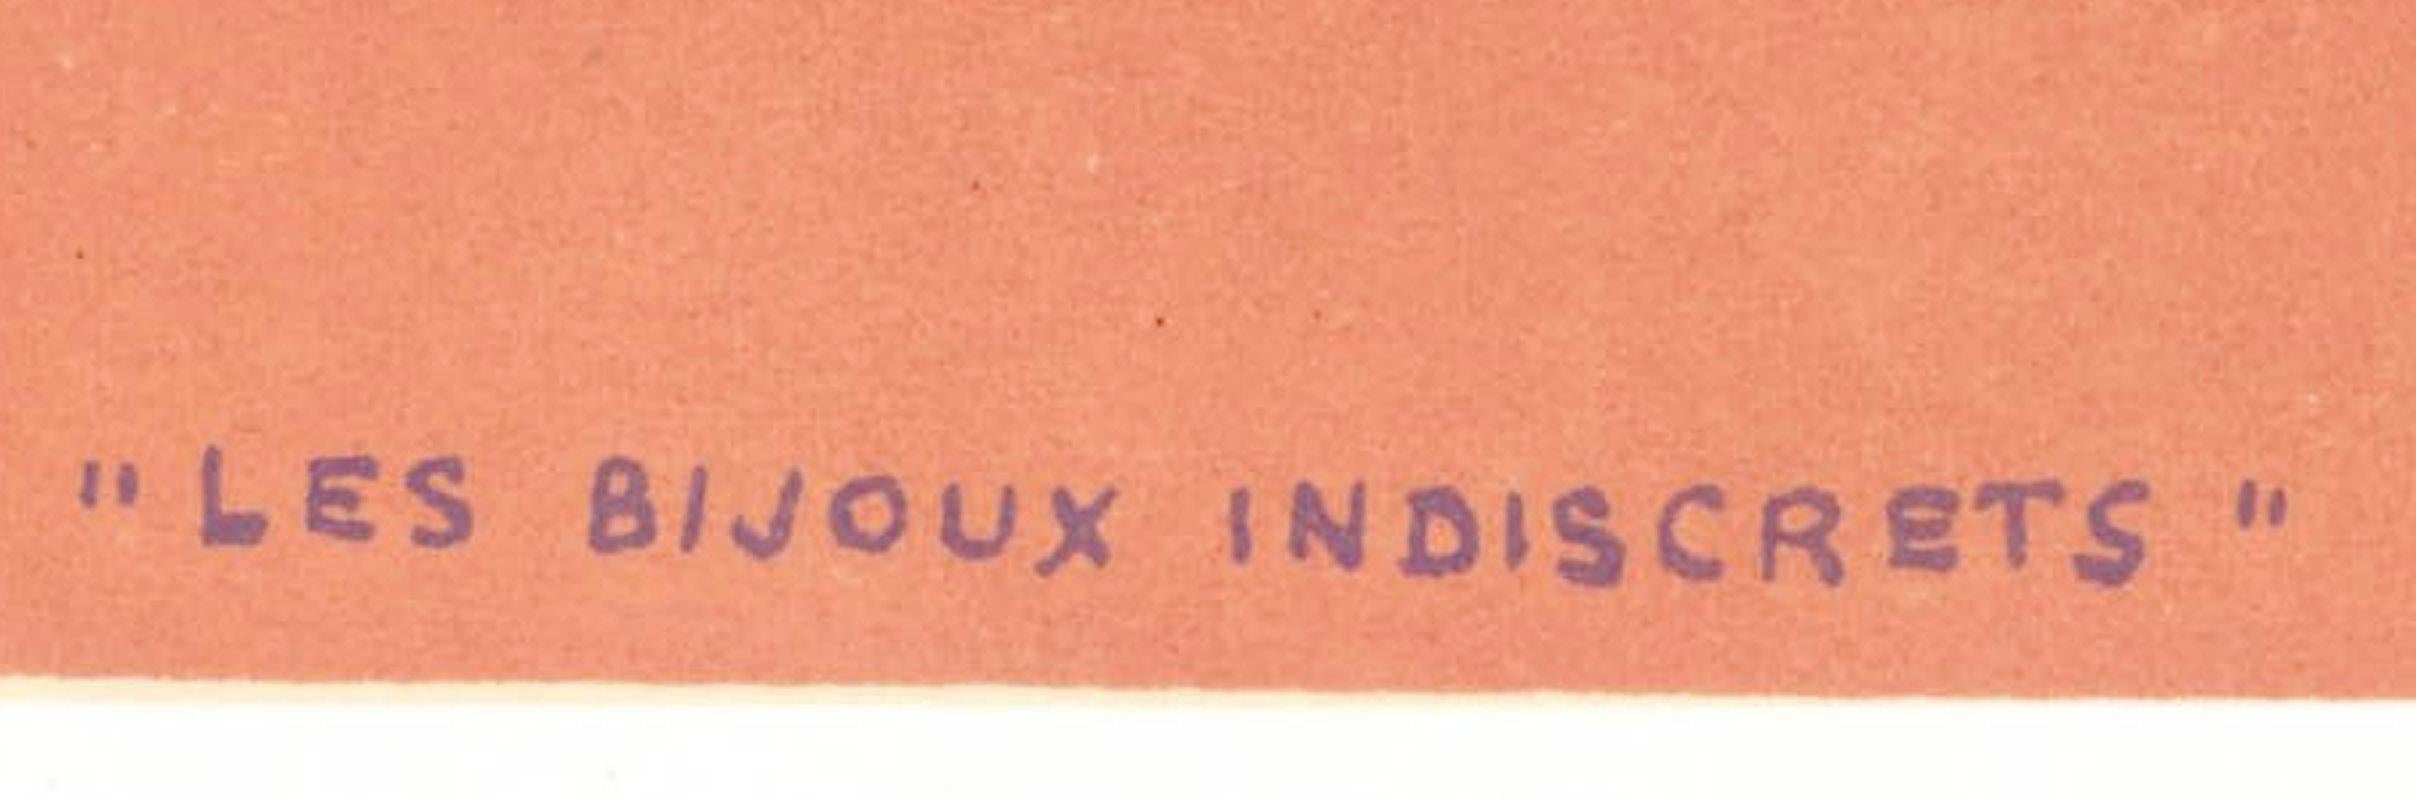 Les Bijoux Indiscrets - Surrealist Print by René Magritte